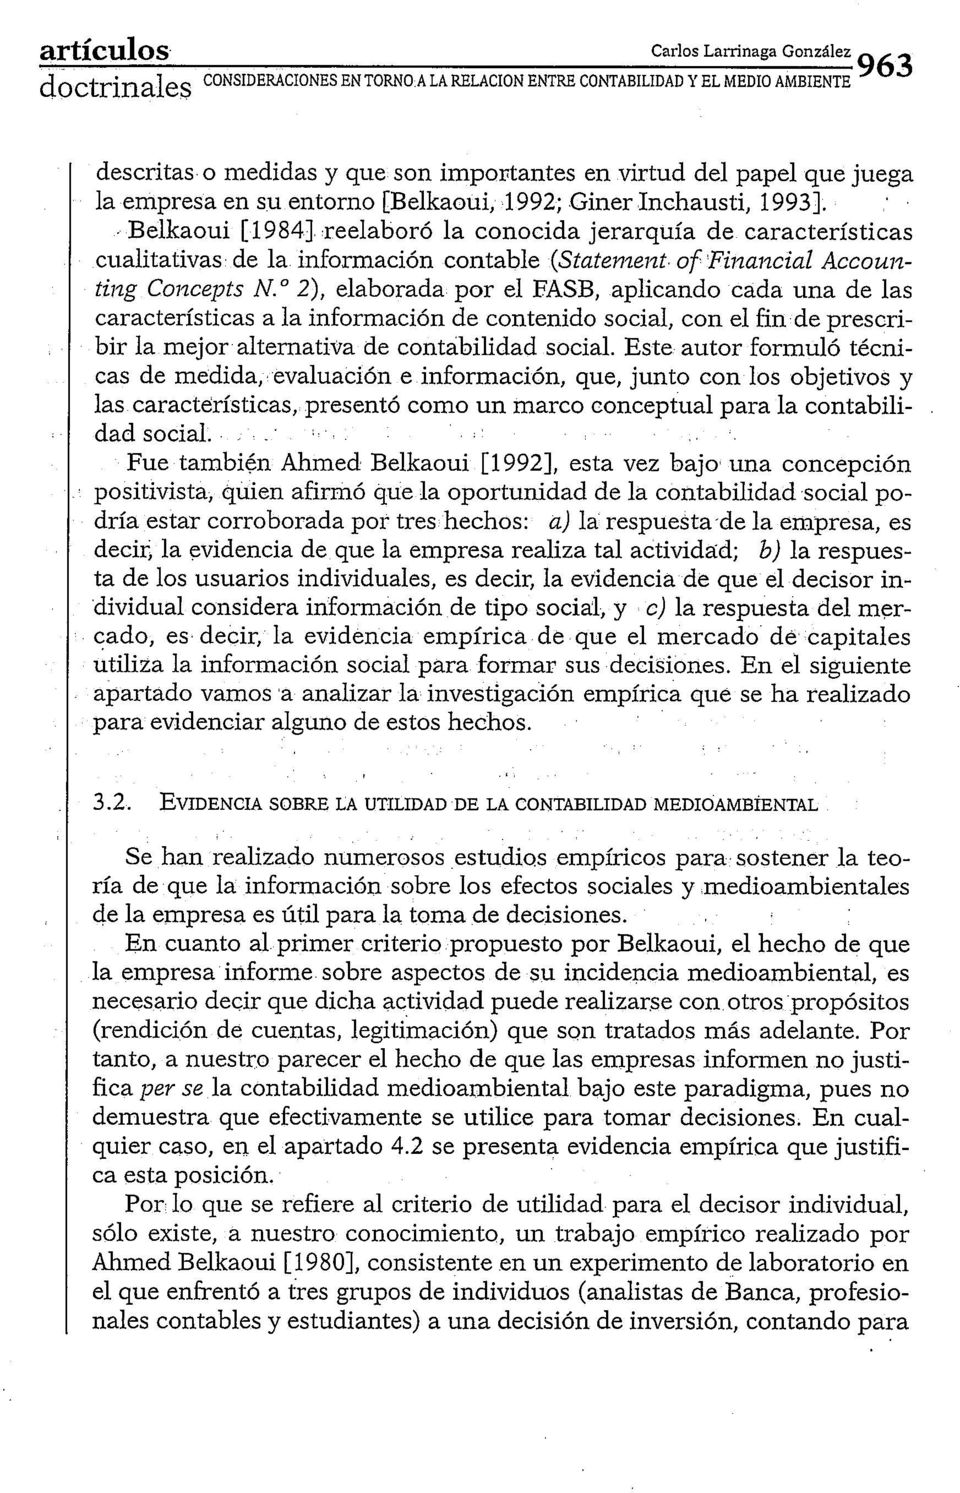 Belkaoui [1984] reelaboró la conocida jerarquía de características cualitativas de la información contable (Statenze~zt of Filzalzcial Accountiizg Co~zcepts N.